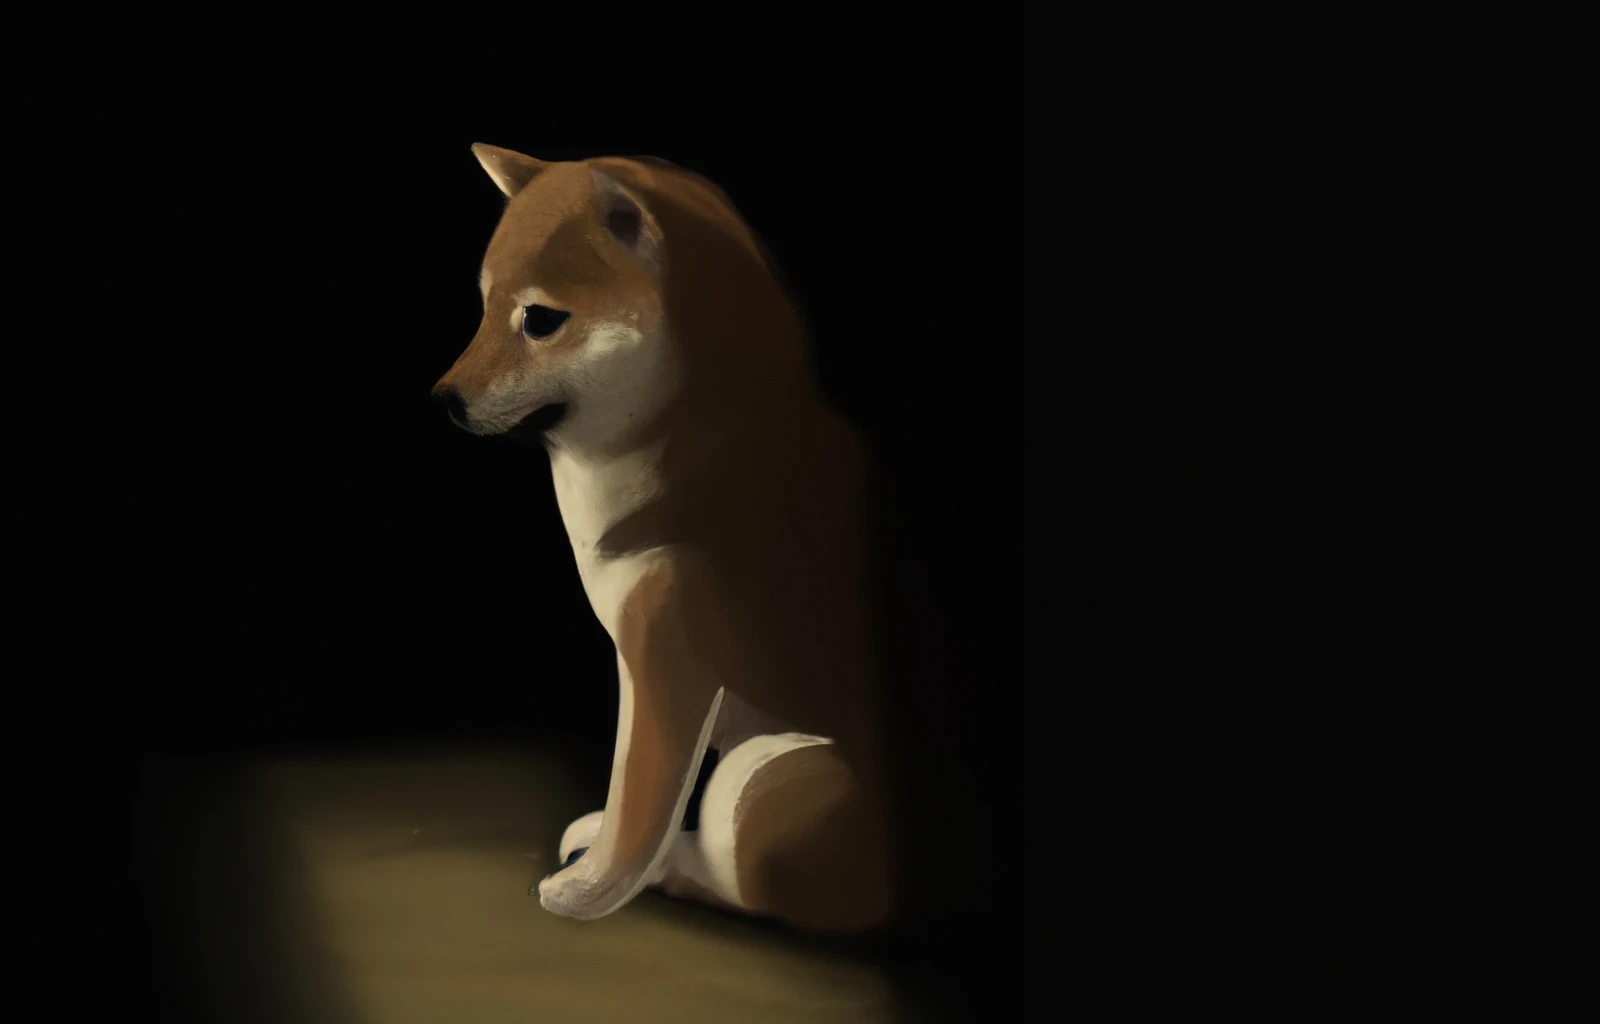 Arte digital perrito de raza Shiba Inu muy solo en una habitación oscura.